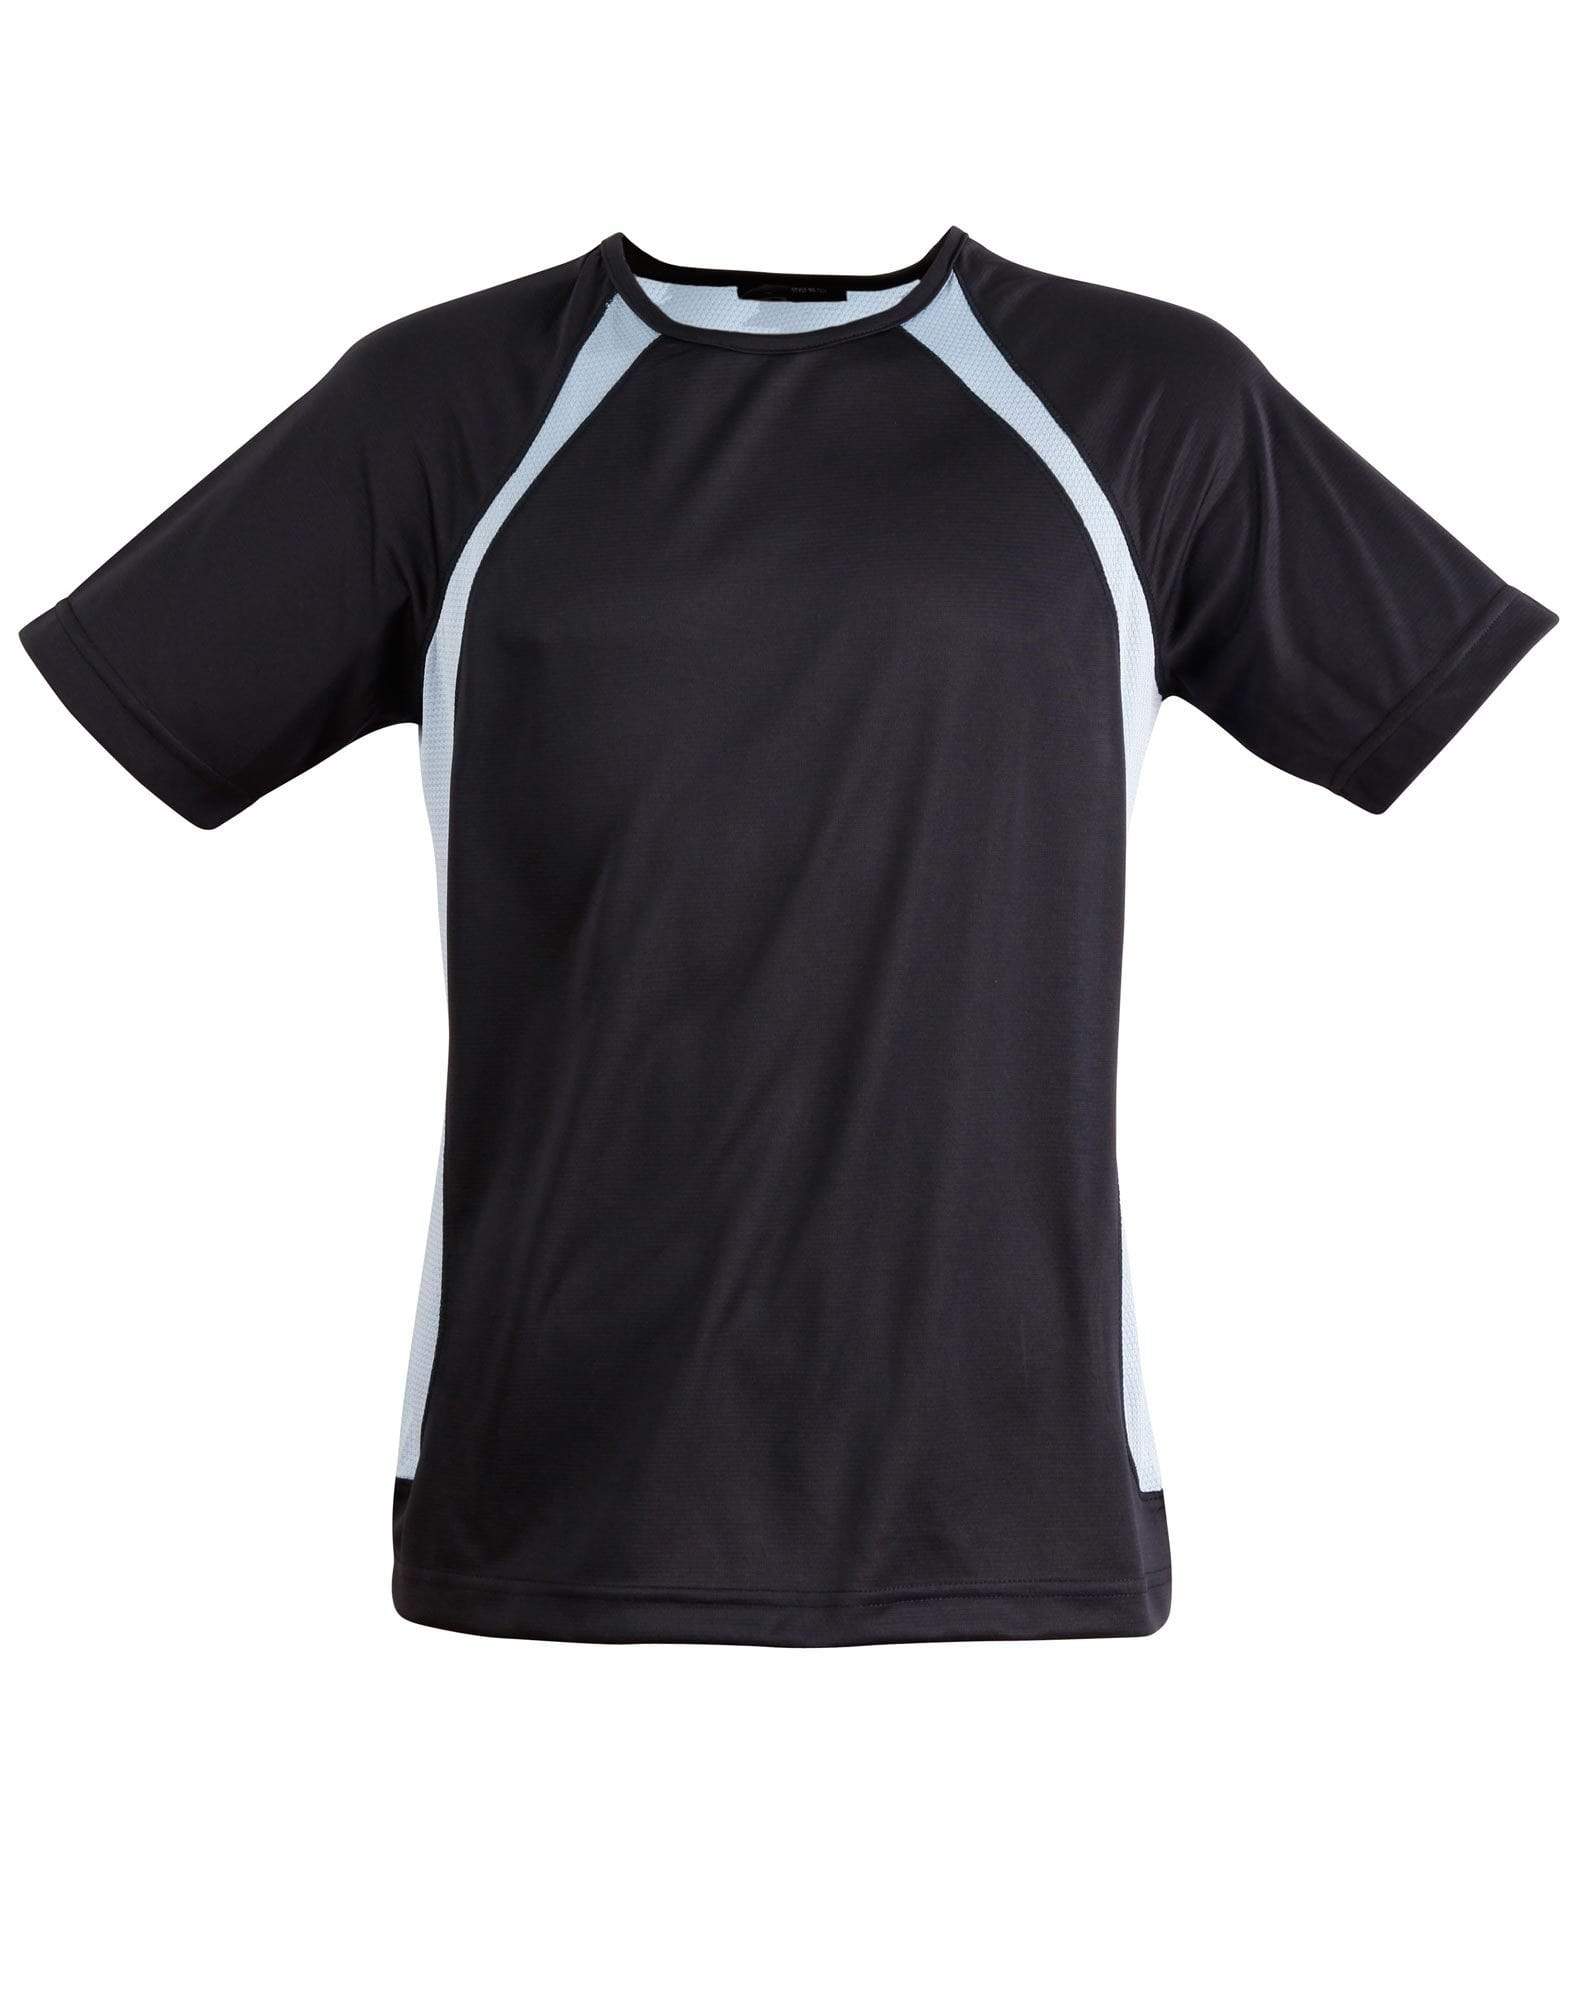 Sprint Tee Shirt Men's Ts71 Casual Wear Winning Spirit Navy/Skyblue S 